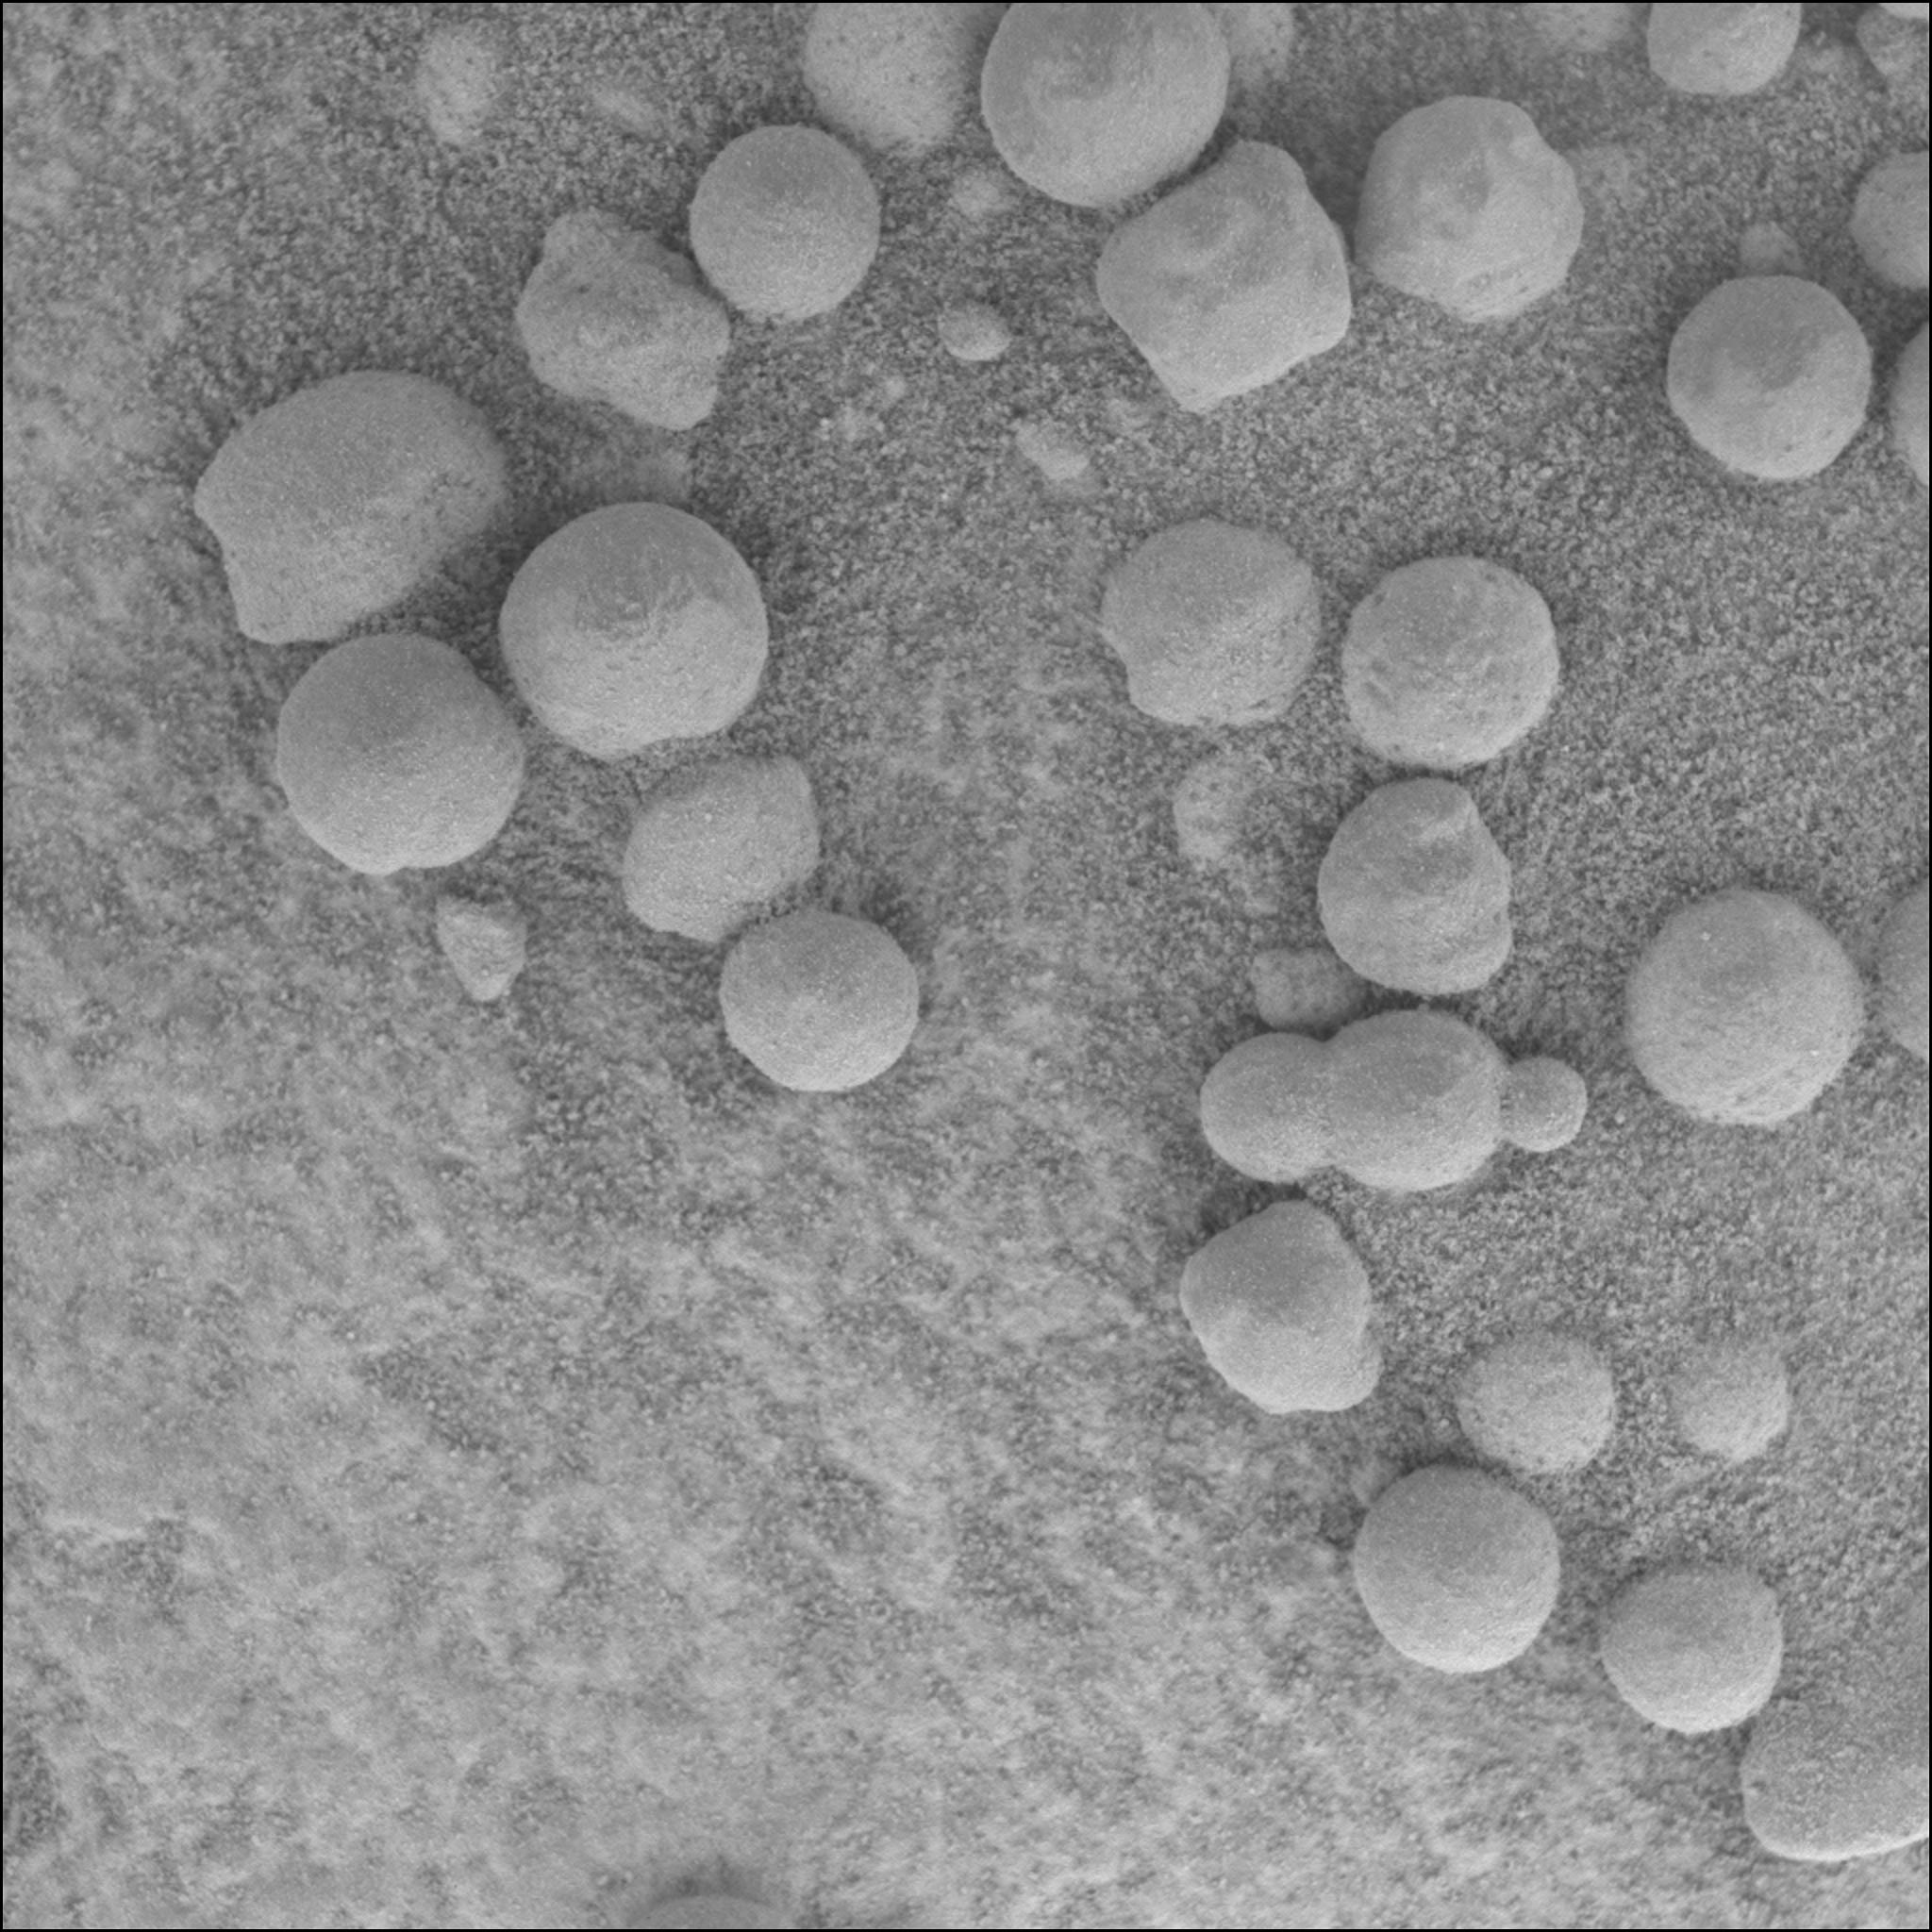 Les myrtilles trouvées en 2004 par Opportunity contiennent d'importantes inclusions d'hématites, riches en fer. Crédit: NASA/JPL